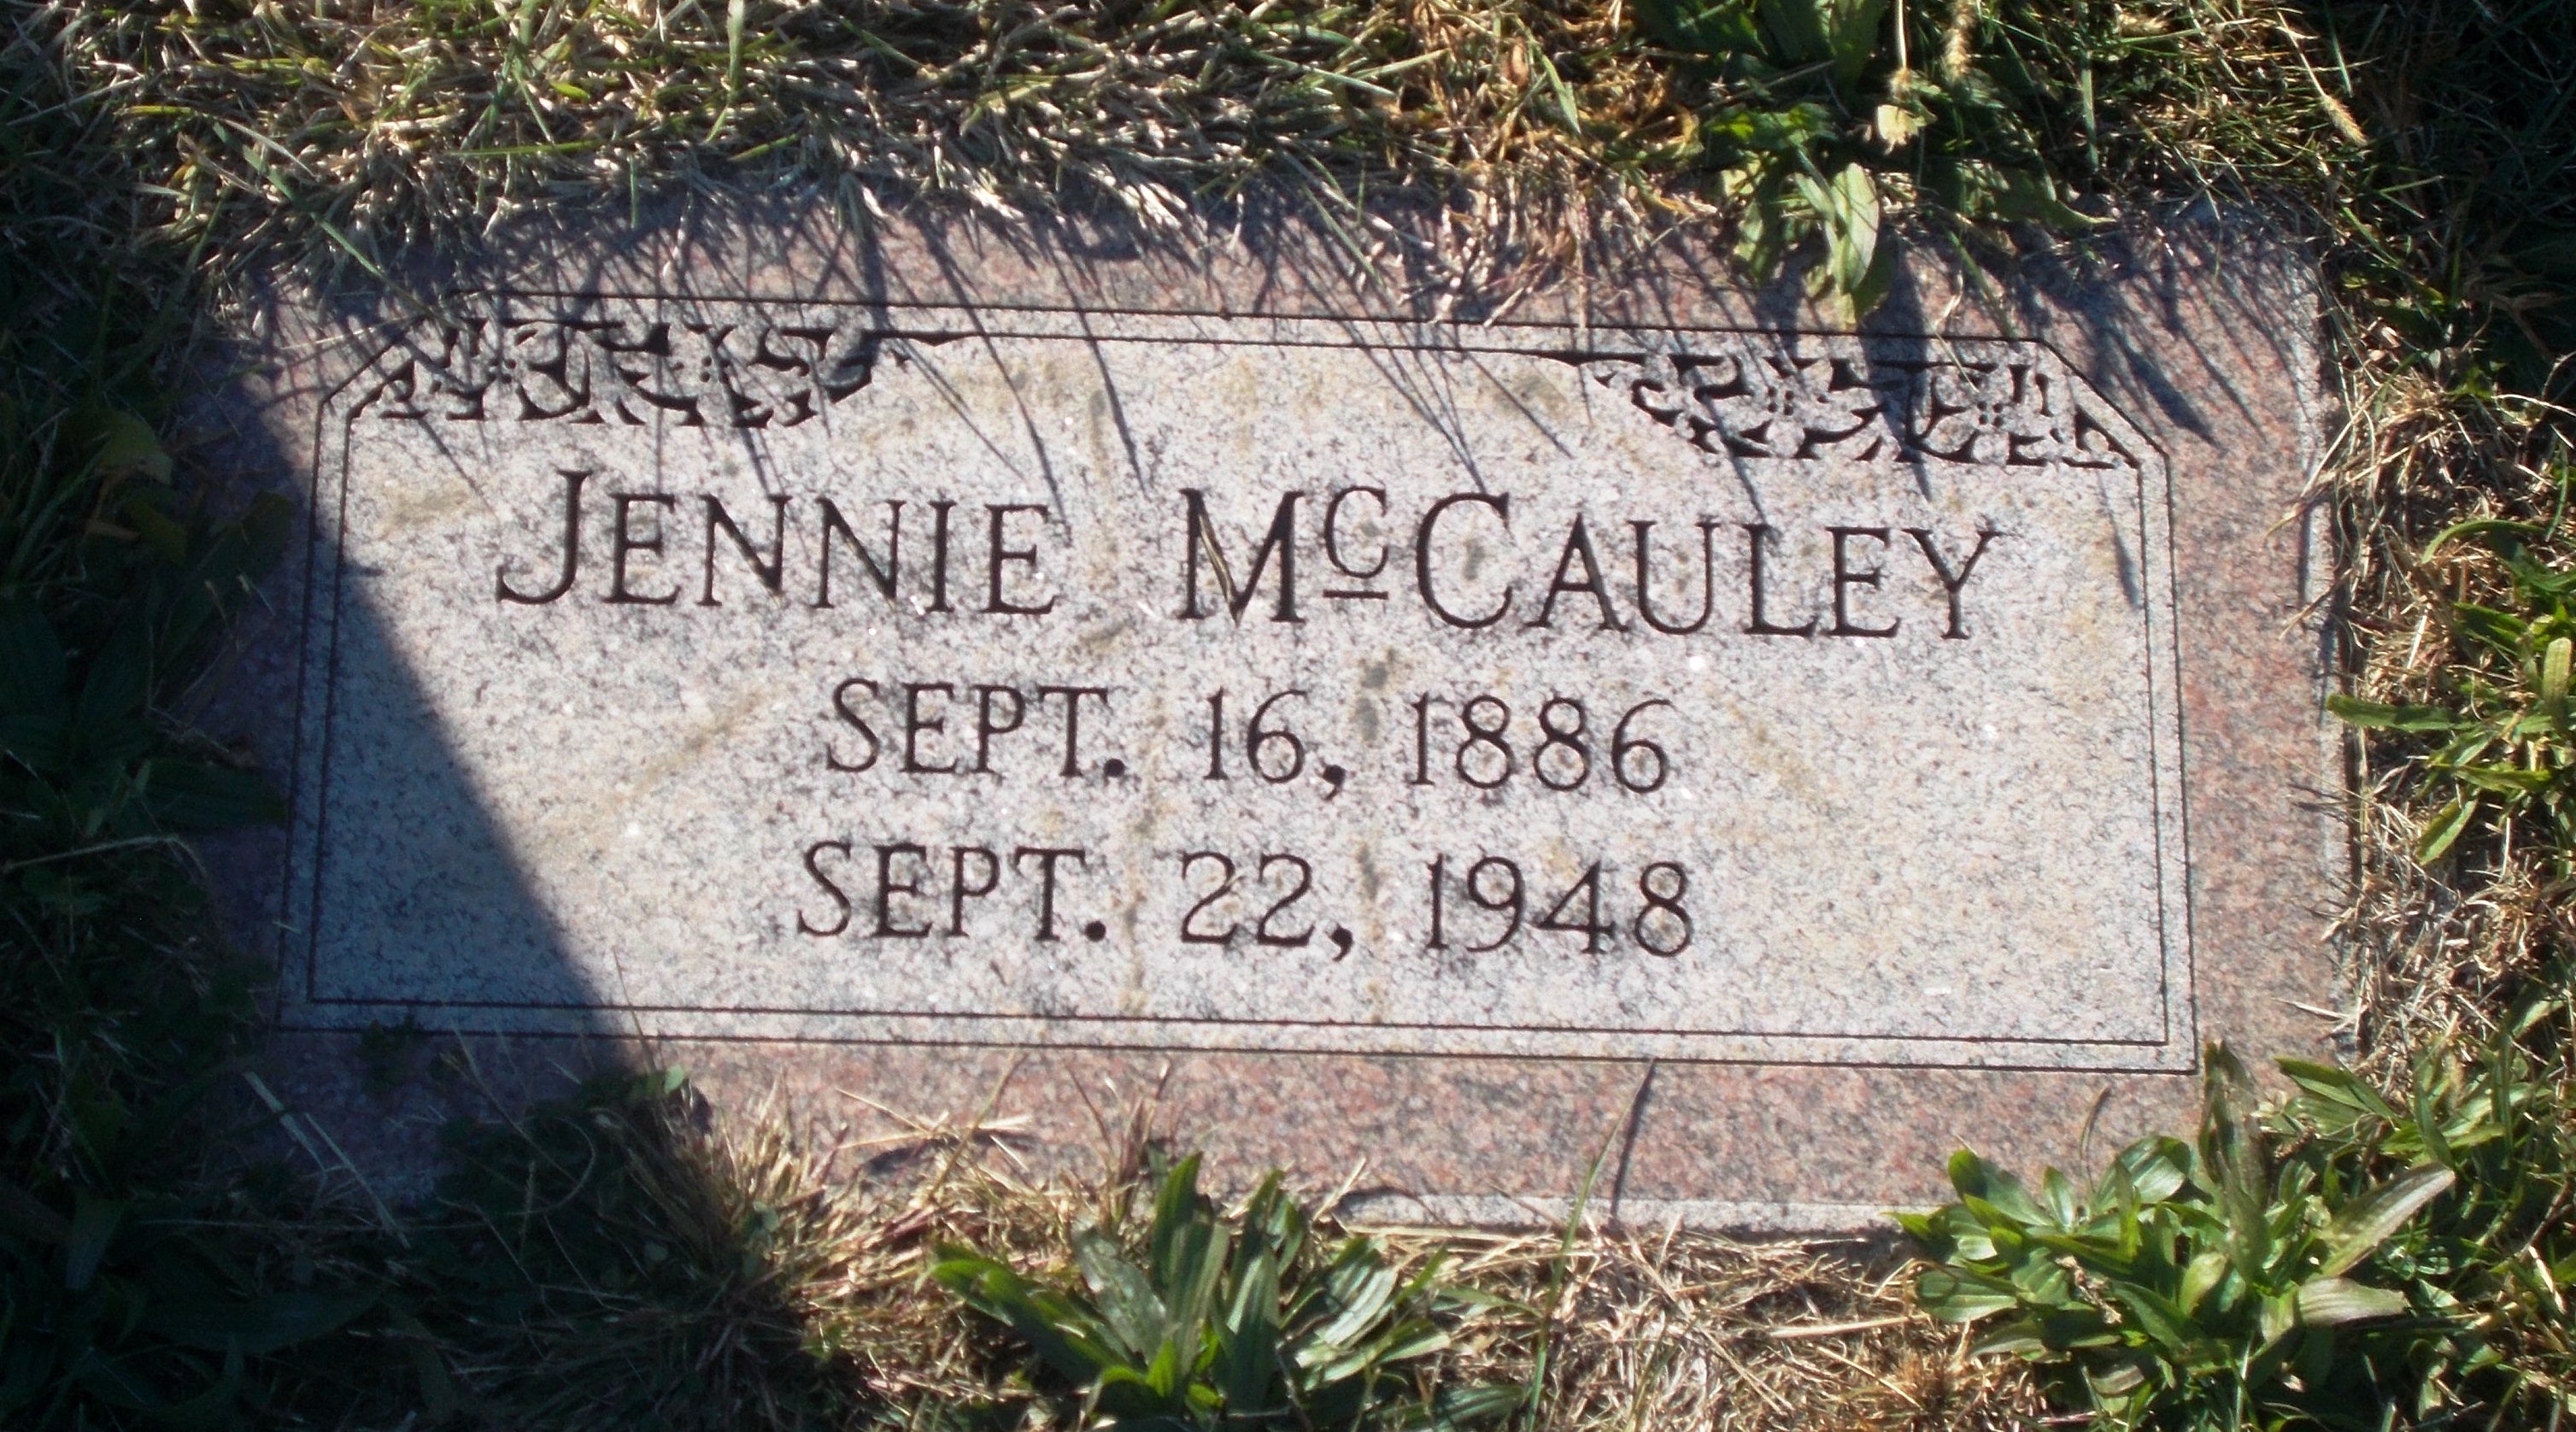 Jennie McCauley